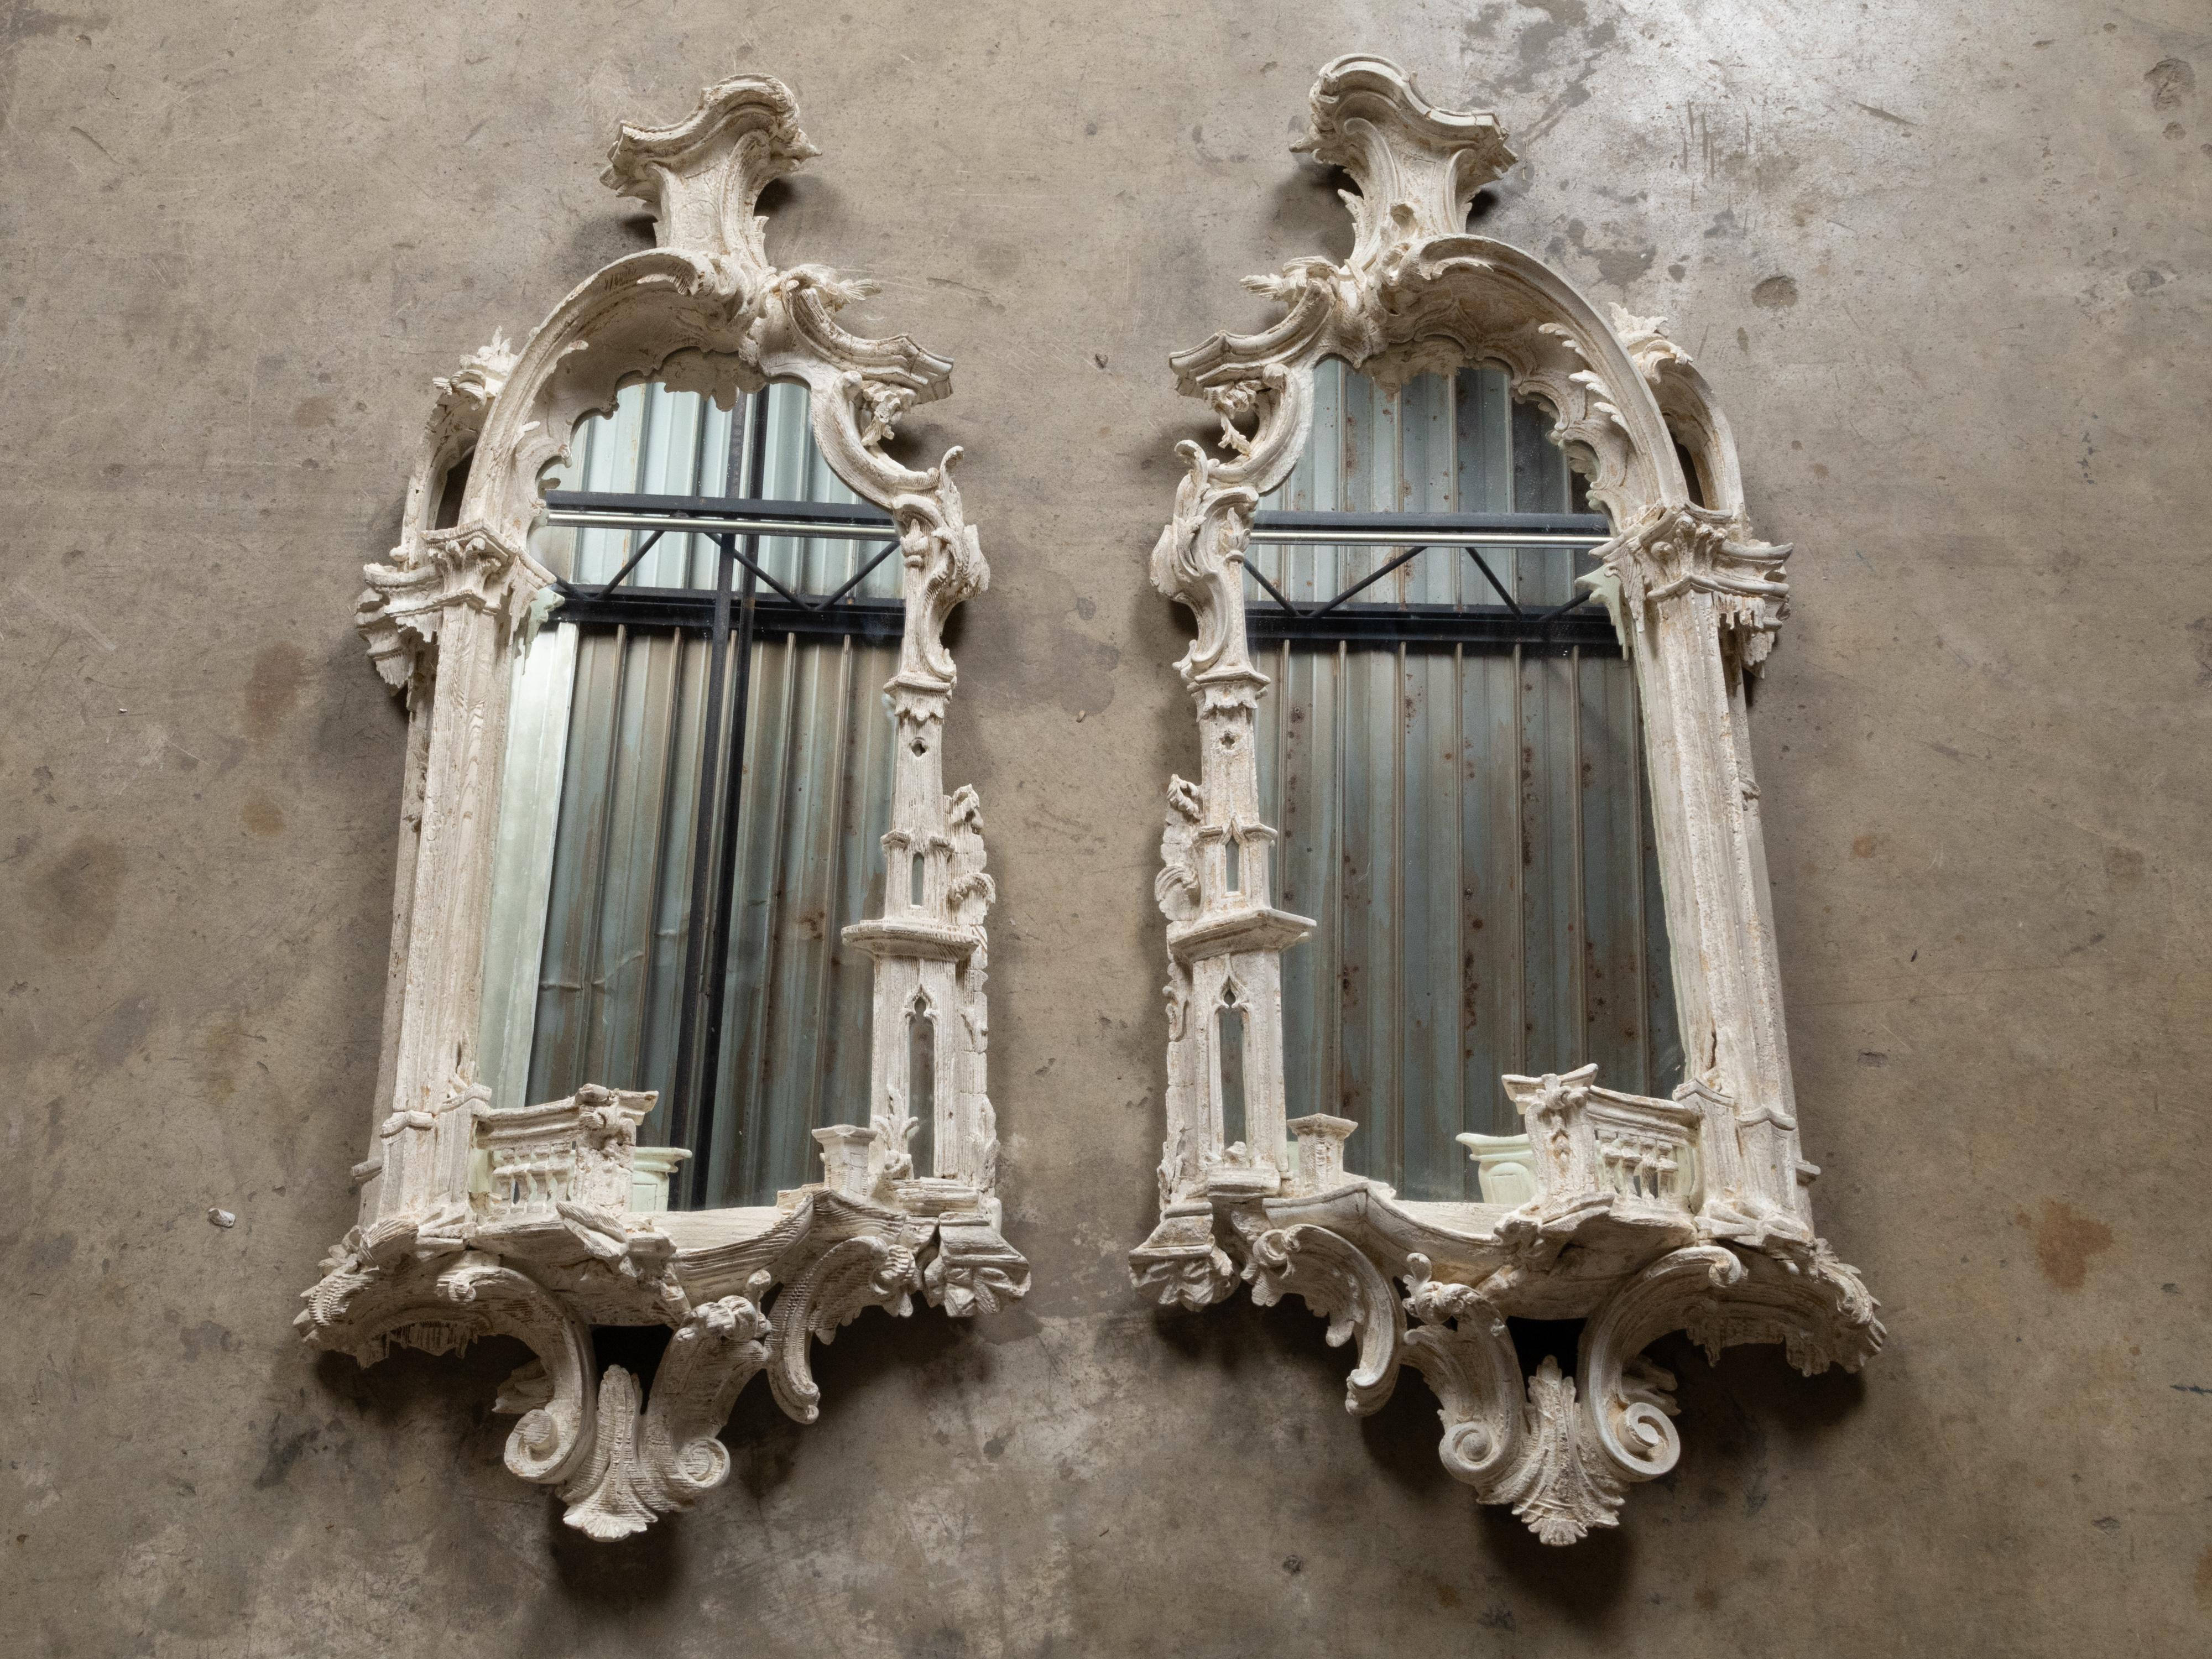 Ein Paar englische geschnitzte und bemalte Spiegel im Rokoko-Chippendale-Stil aus dem 19. Jahrhundert mit reich geschnitzten Rahmen. Dieses exquisite Paar englischer Spiegel im Rokoko-Chippendale-Stil aus dem 19. Jahrhundert zeichnet sich durch